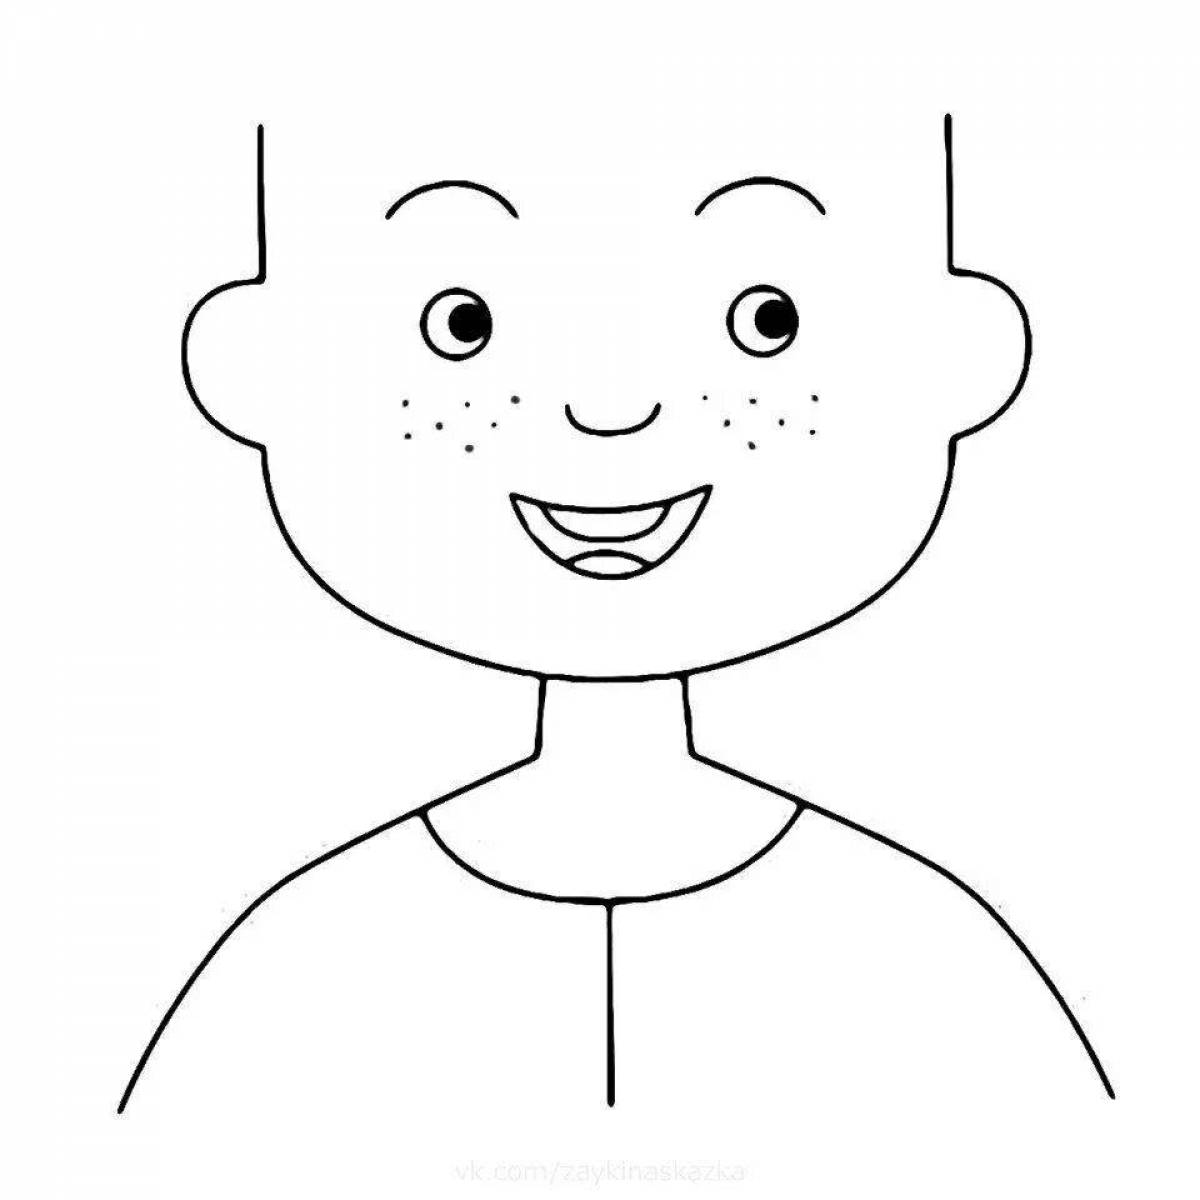 Анимированная раскраска лица мальчика для детей